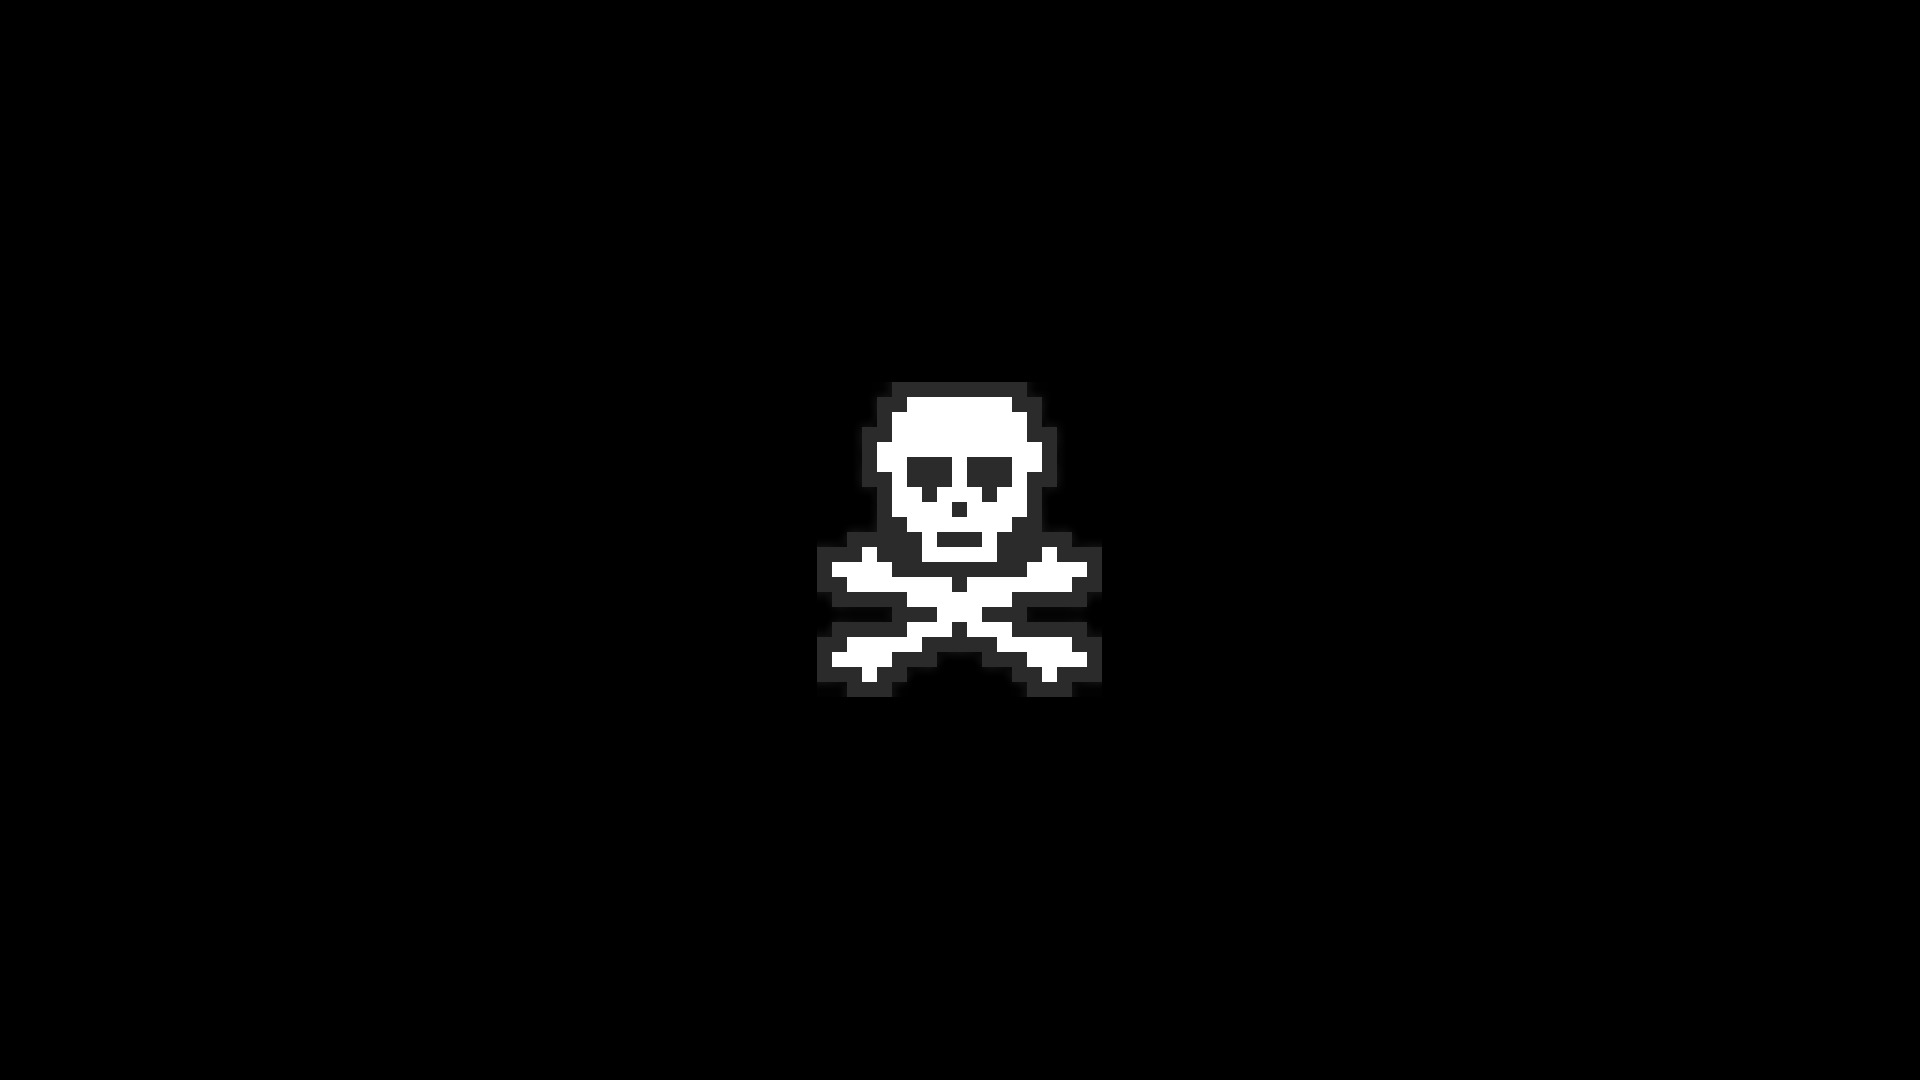 pirates, Pixel art, Pixels, Skull, Skull and bones Wallpaper